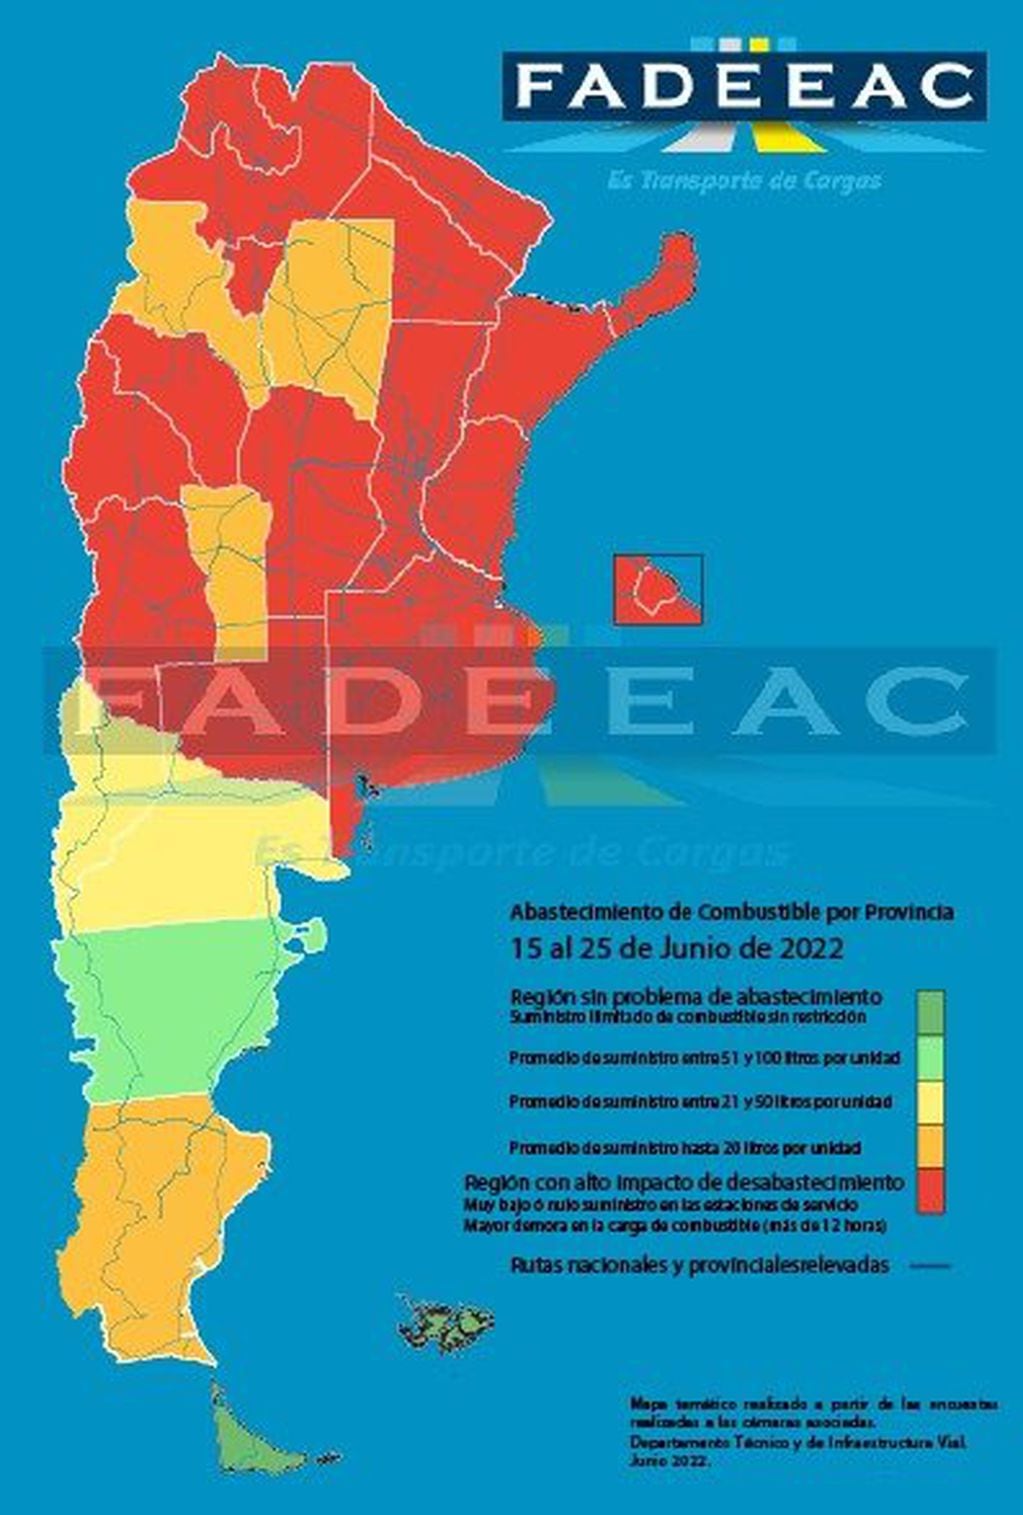 El “Mapa de abastecimiento de gasoil”, creado por técnicos de la Federación Argentina de Entidades Empresarias del Autotransporte de Cargas (FADEEAC), muestra que en ese período 23 distritos registraron problemas de diferente magnitud para acceder al gasoil.